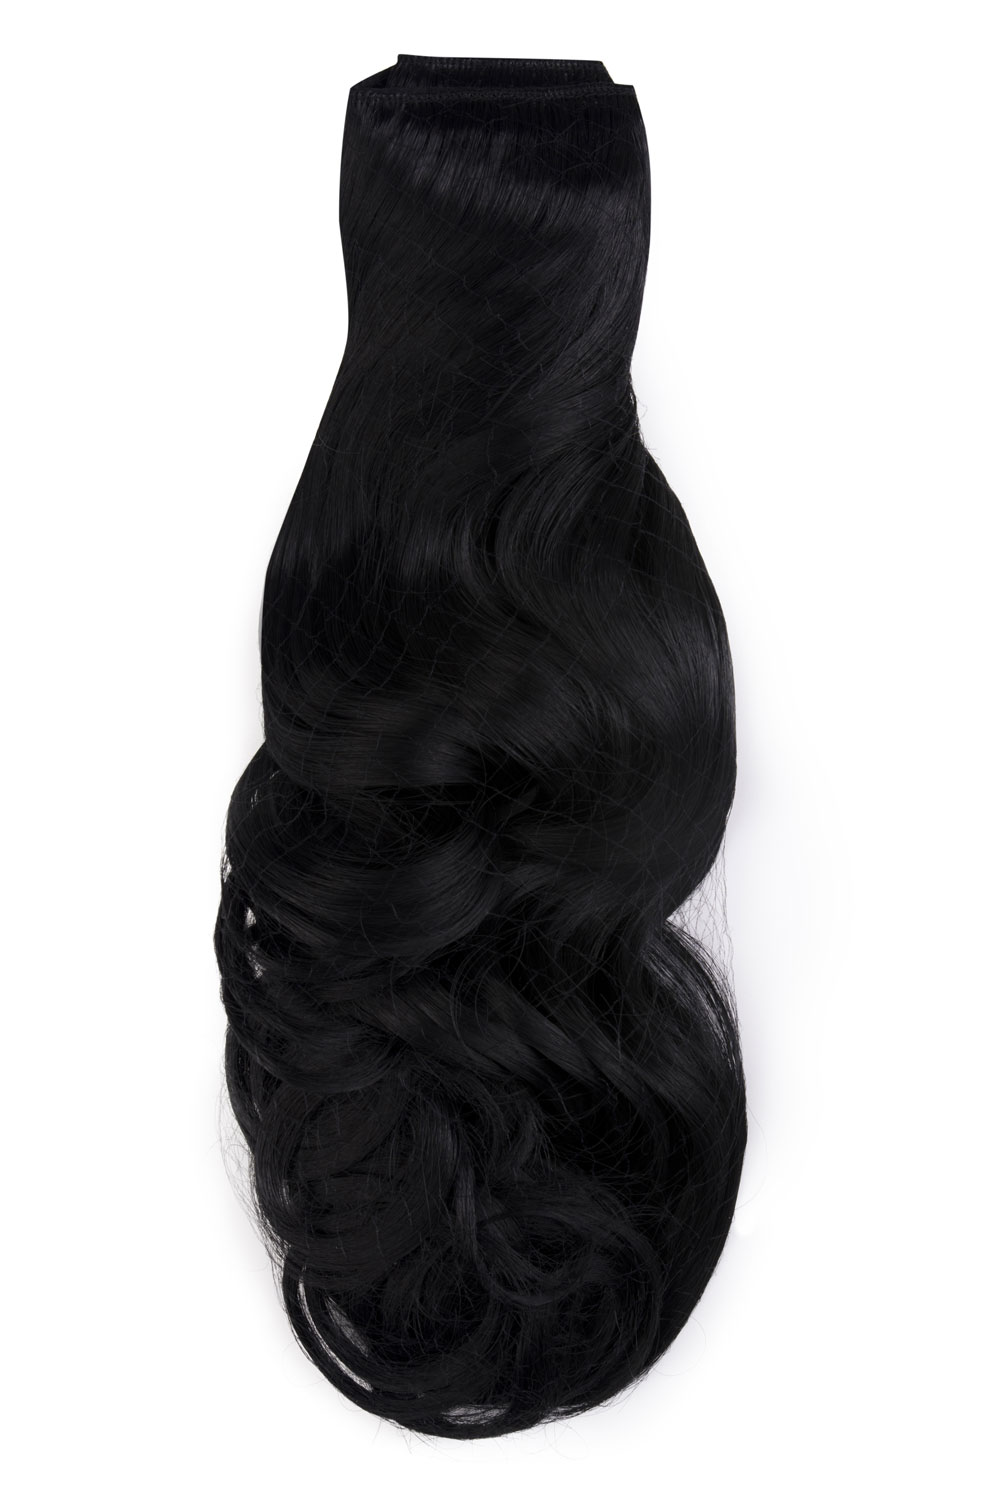 Čierne jednopásové vlasy, vlnité, 60cm, 115g, farba 1